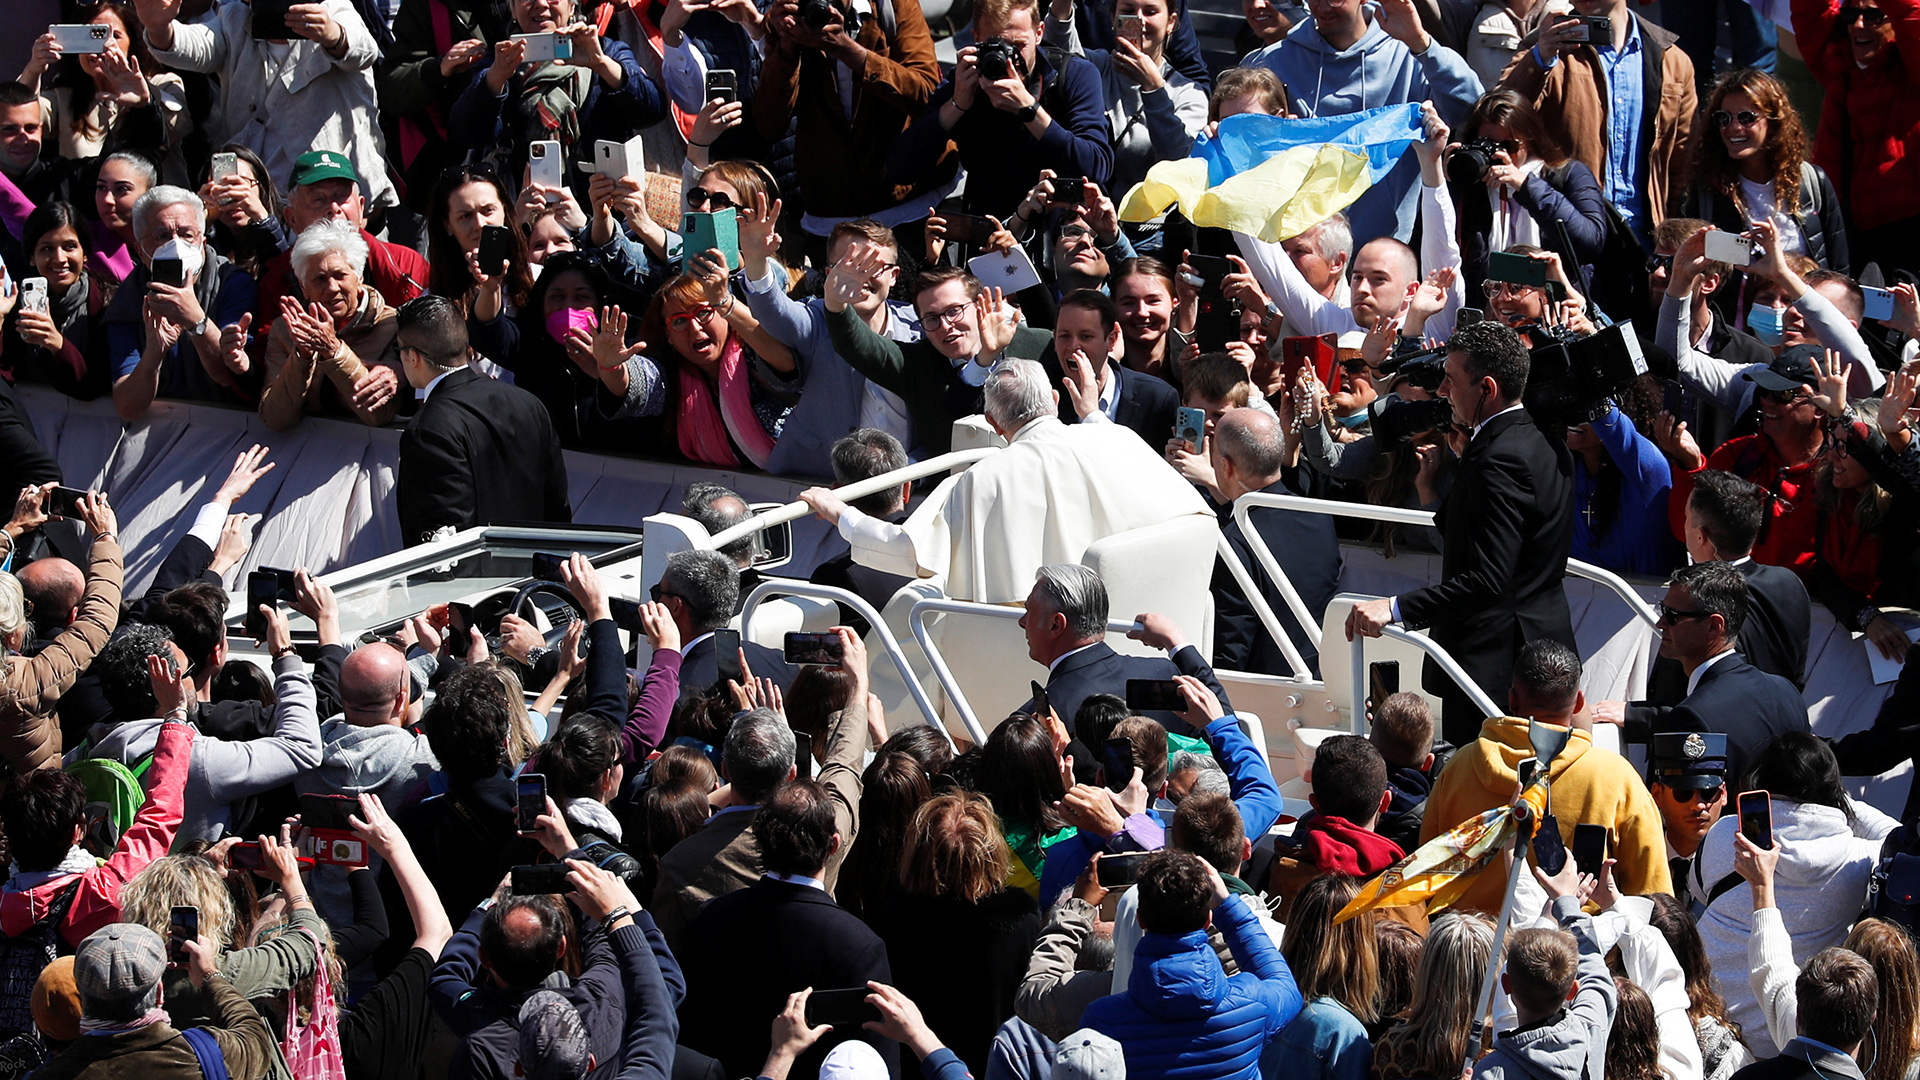 Papst Franziskus grüßt die Menschen, während er in seinem Papamobil über den Petersplatz fährt. | REUTERS